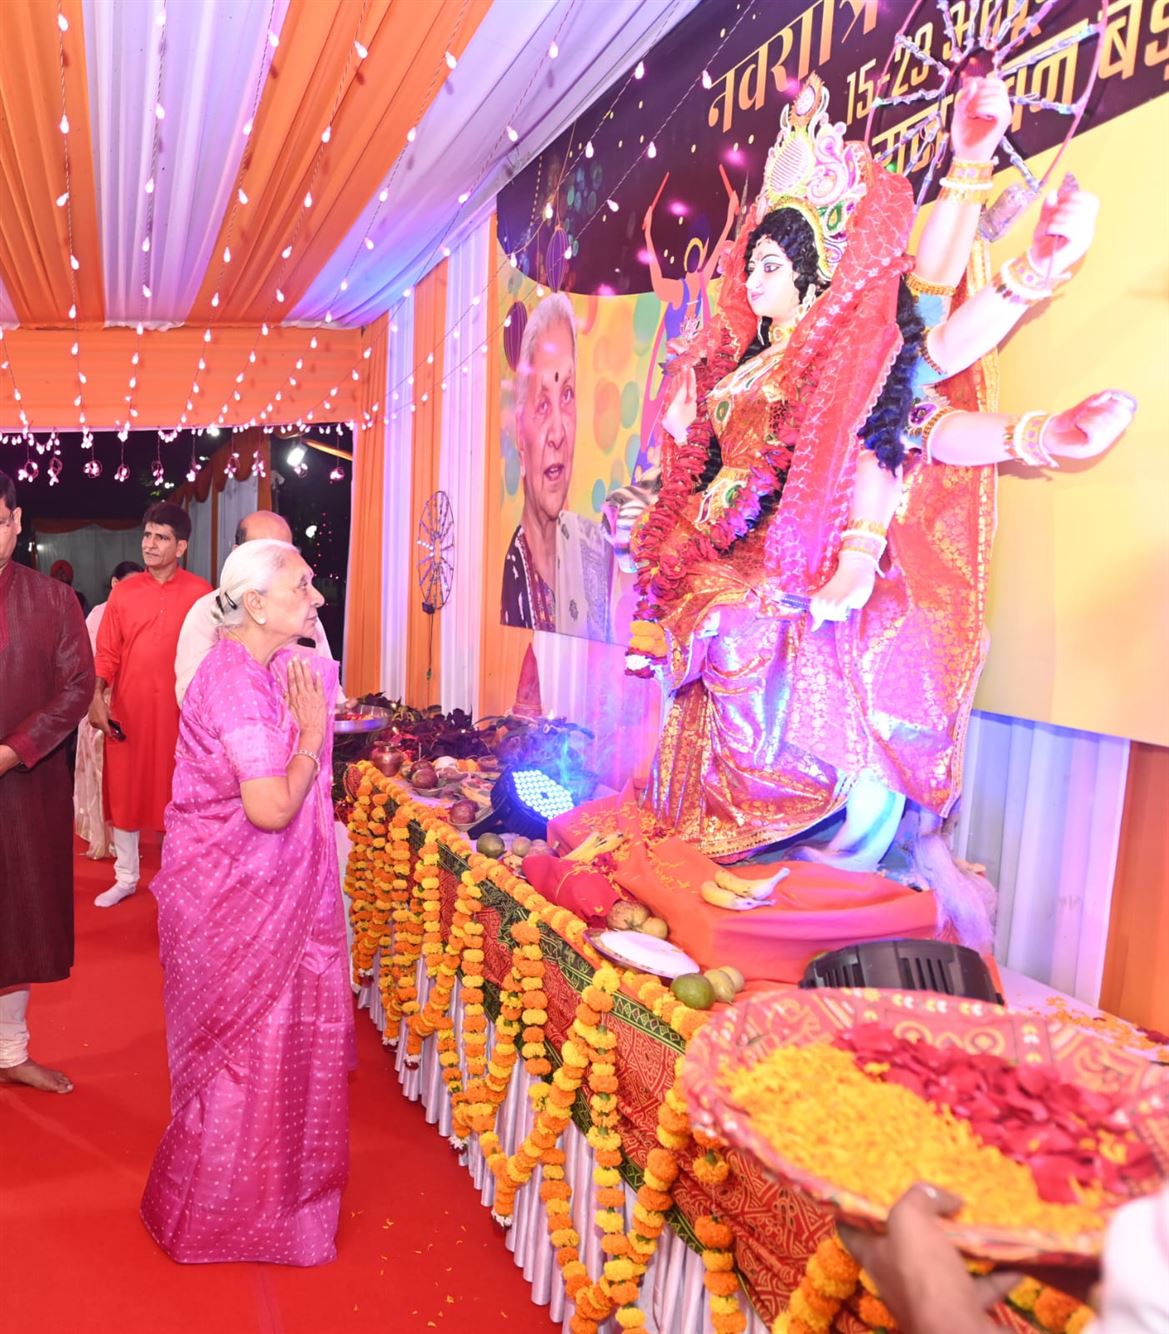 The Governor inaugurated the ‘Navratri and Garba Mahotsav’ at Raj Bhavan./राज्यपाल ने राजभवन में नवरात्रि एवं गरबा महोत्सव का शुभारम्भ किया